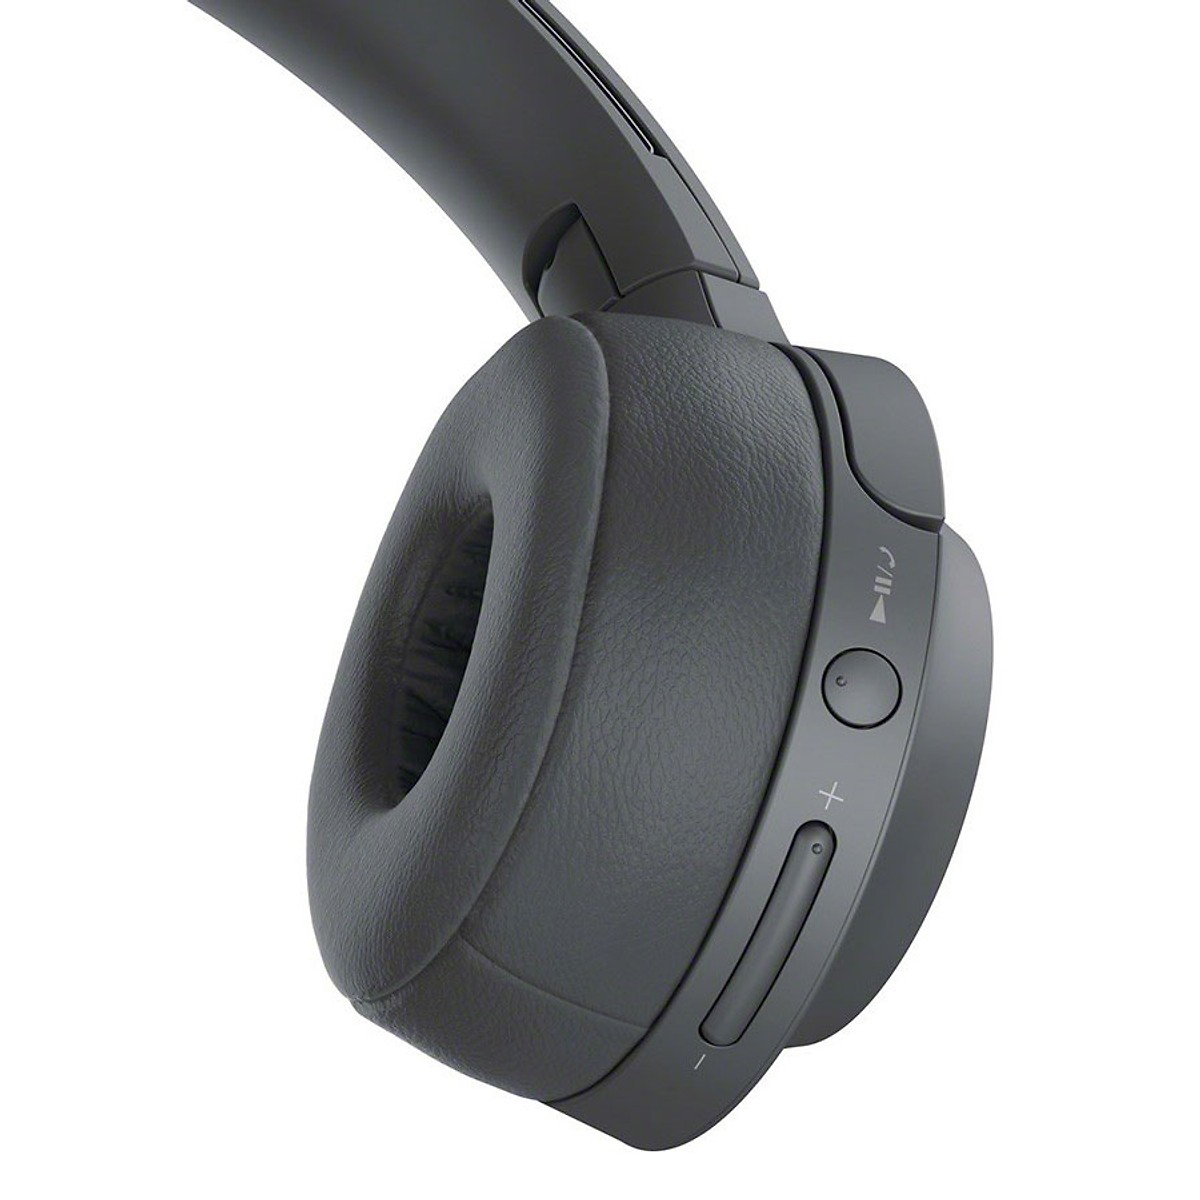 Tai nghe chụp đầu không dây SONY WH-H800/BM E màu đen